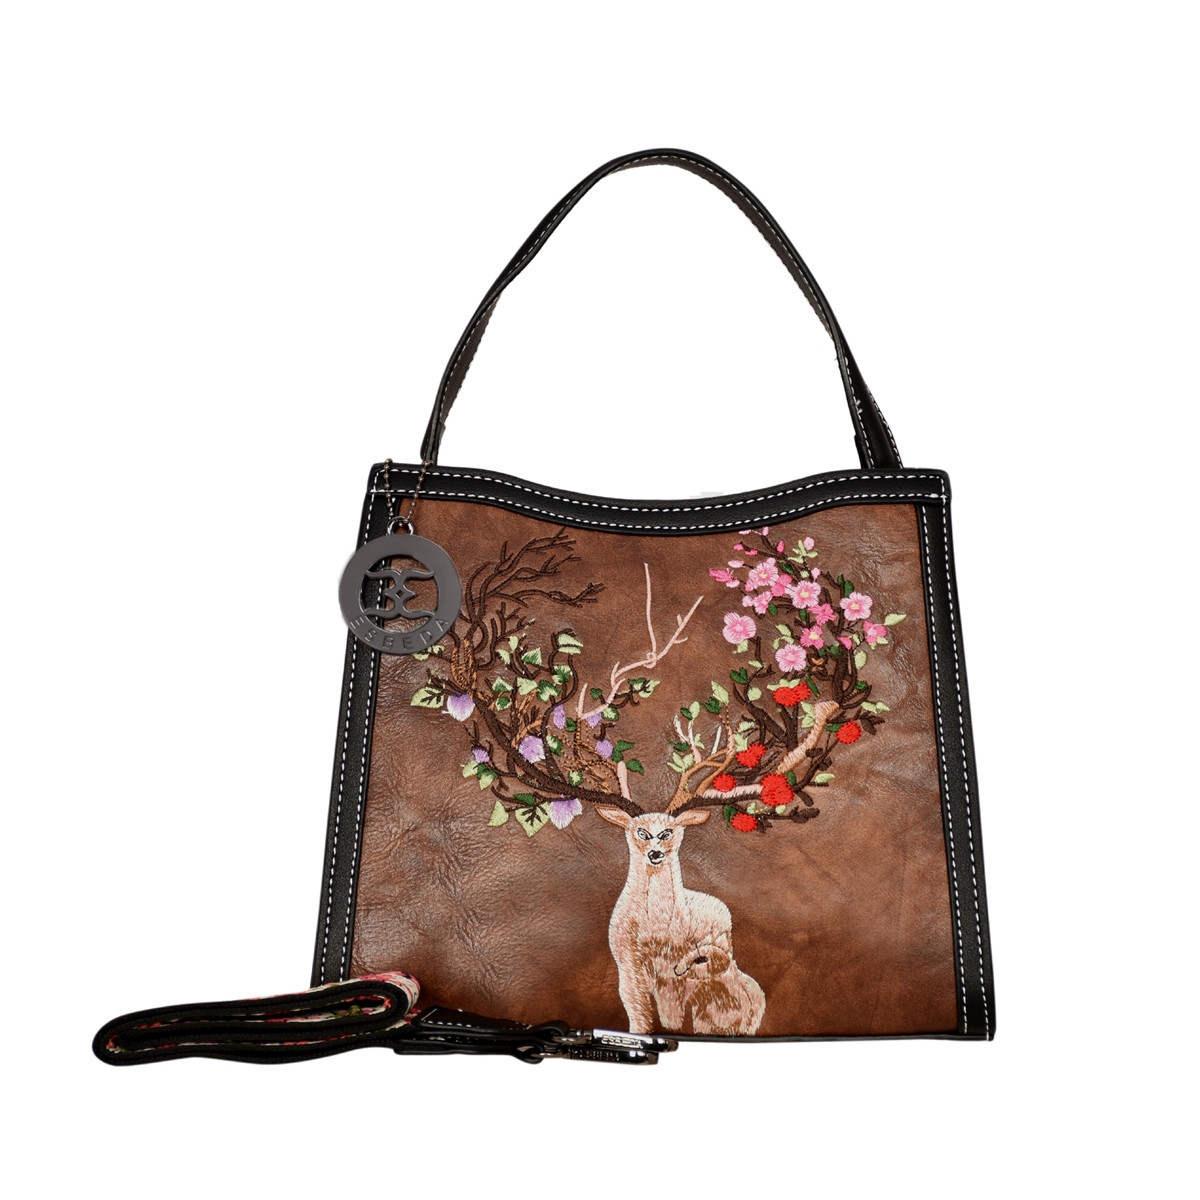 ESBEDA | ESBEDA Coffee Brown Color Embroidery Dear Handbag For Womens